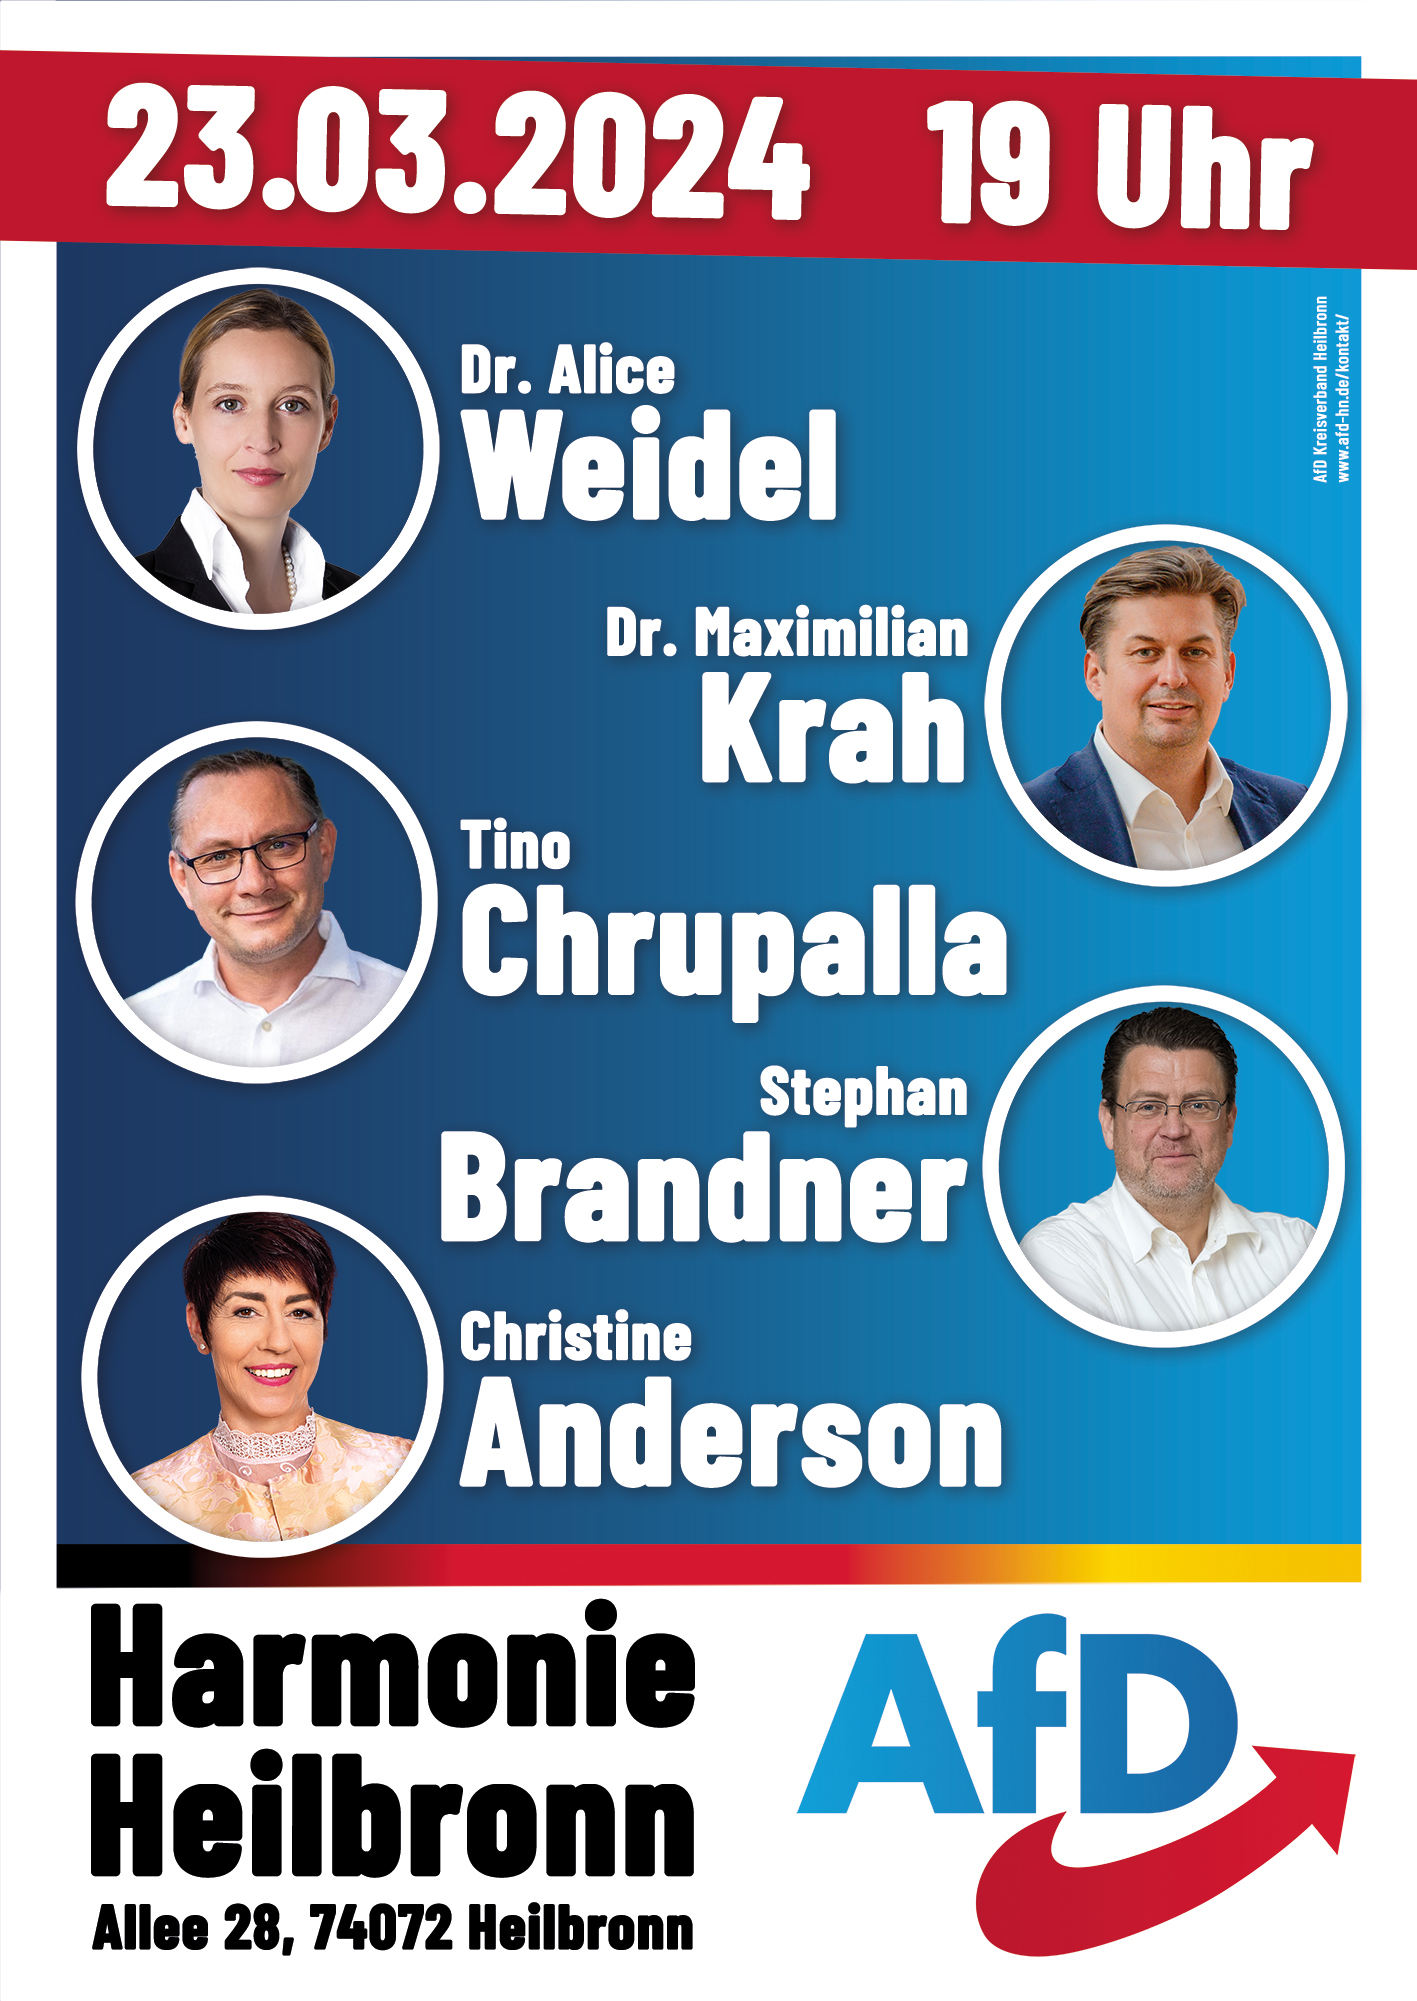 Veranstaltung am 23.03.2024 in Heilbronn mit Dr. Alice Weidel, Tino Chrupalla, Stephan Brandner, Dr. Maximilian Krah und Christine Anderson